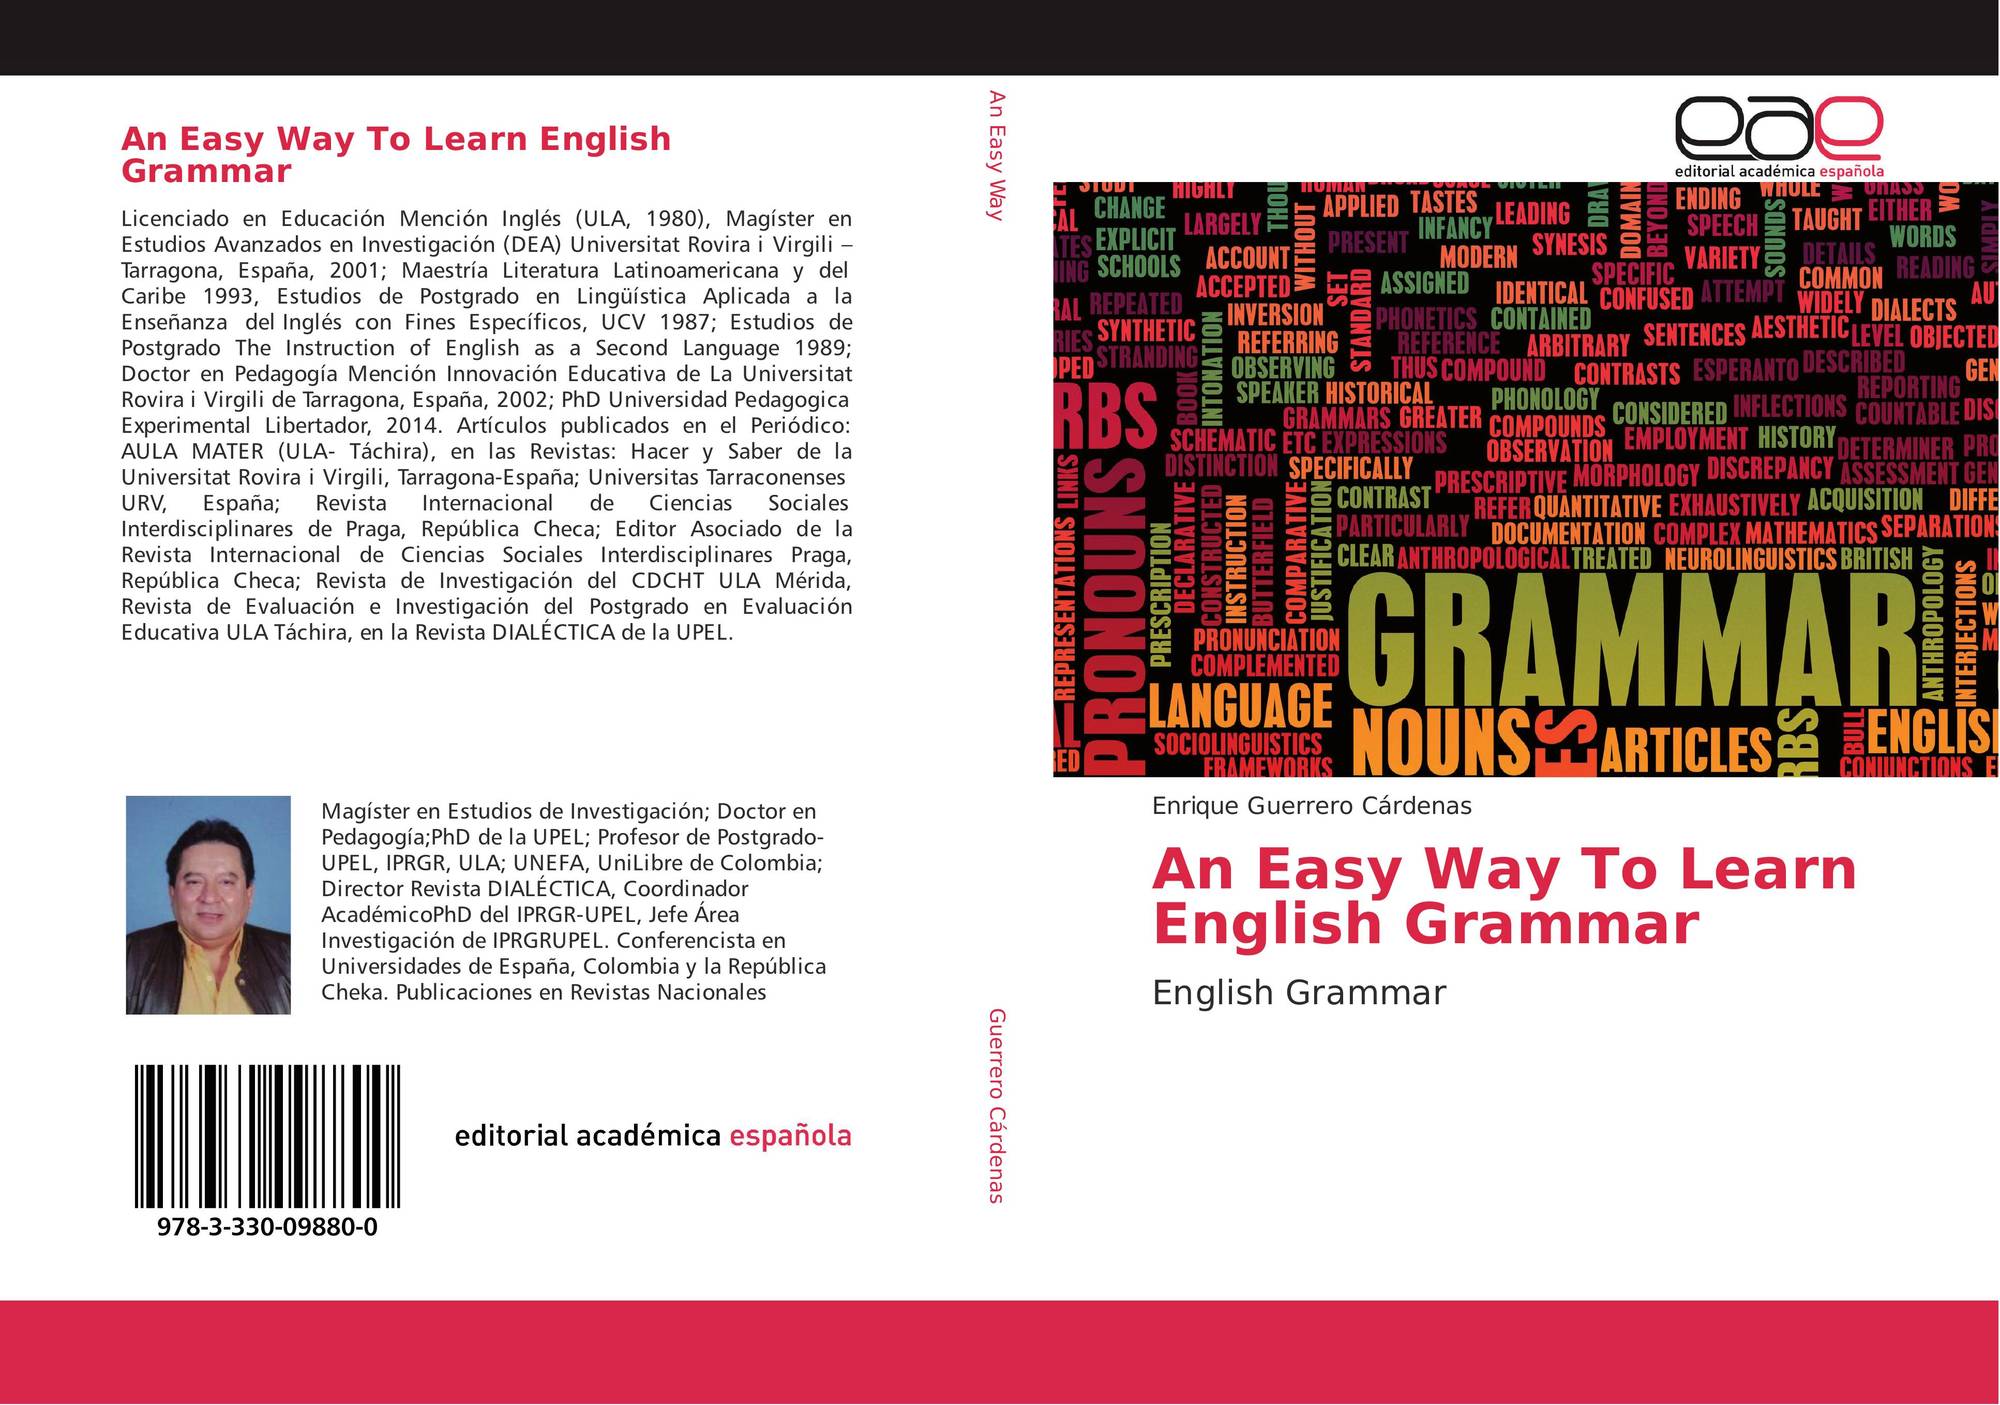 an-easy-way-to-learn-english-grammar-978-3-330-09880-0-3330098805-9783330098800-por-enrique